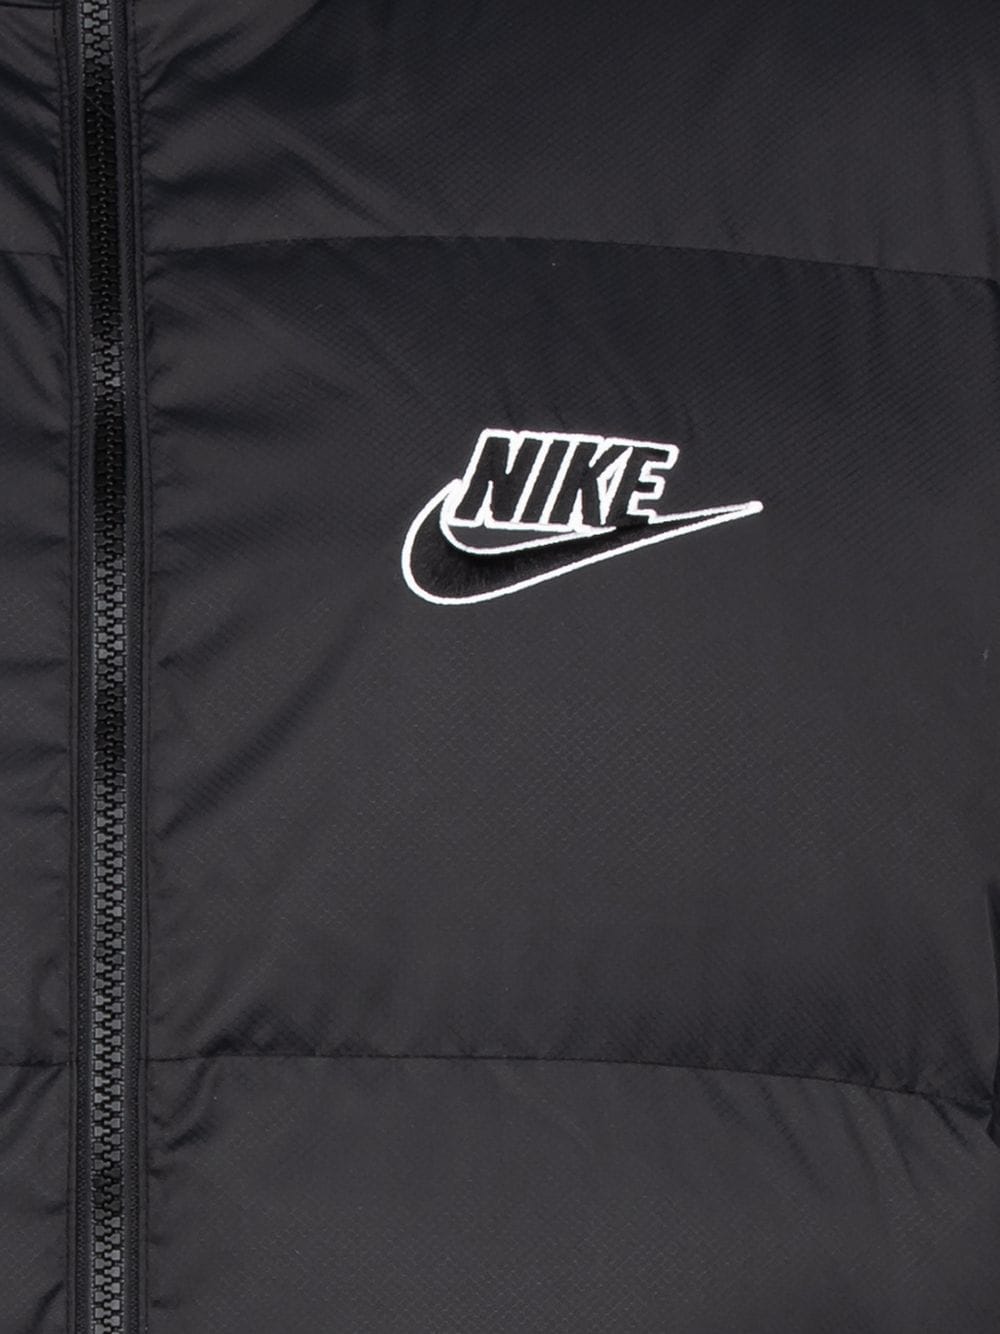 Supreme x Nike Reversible Puffy Jacket - Farfetch